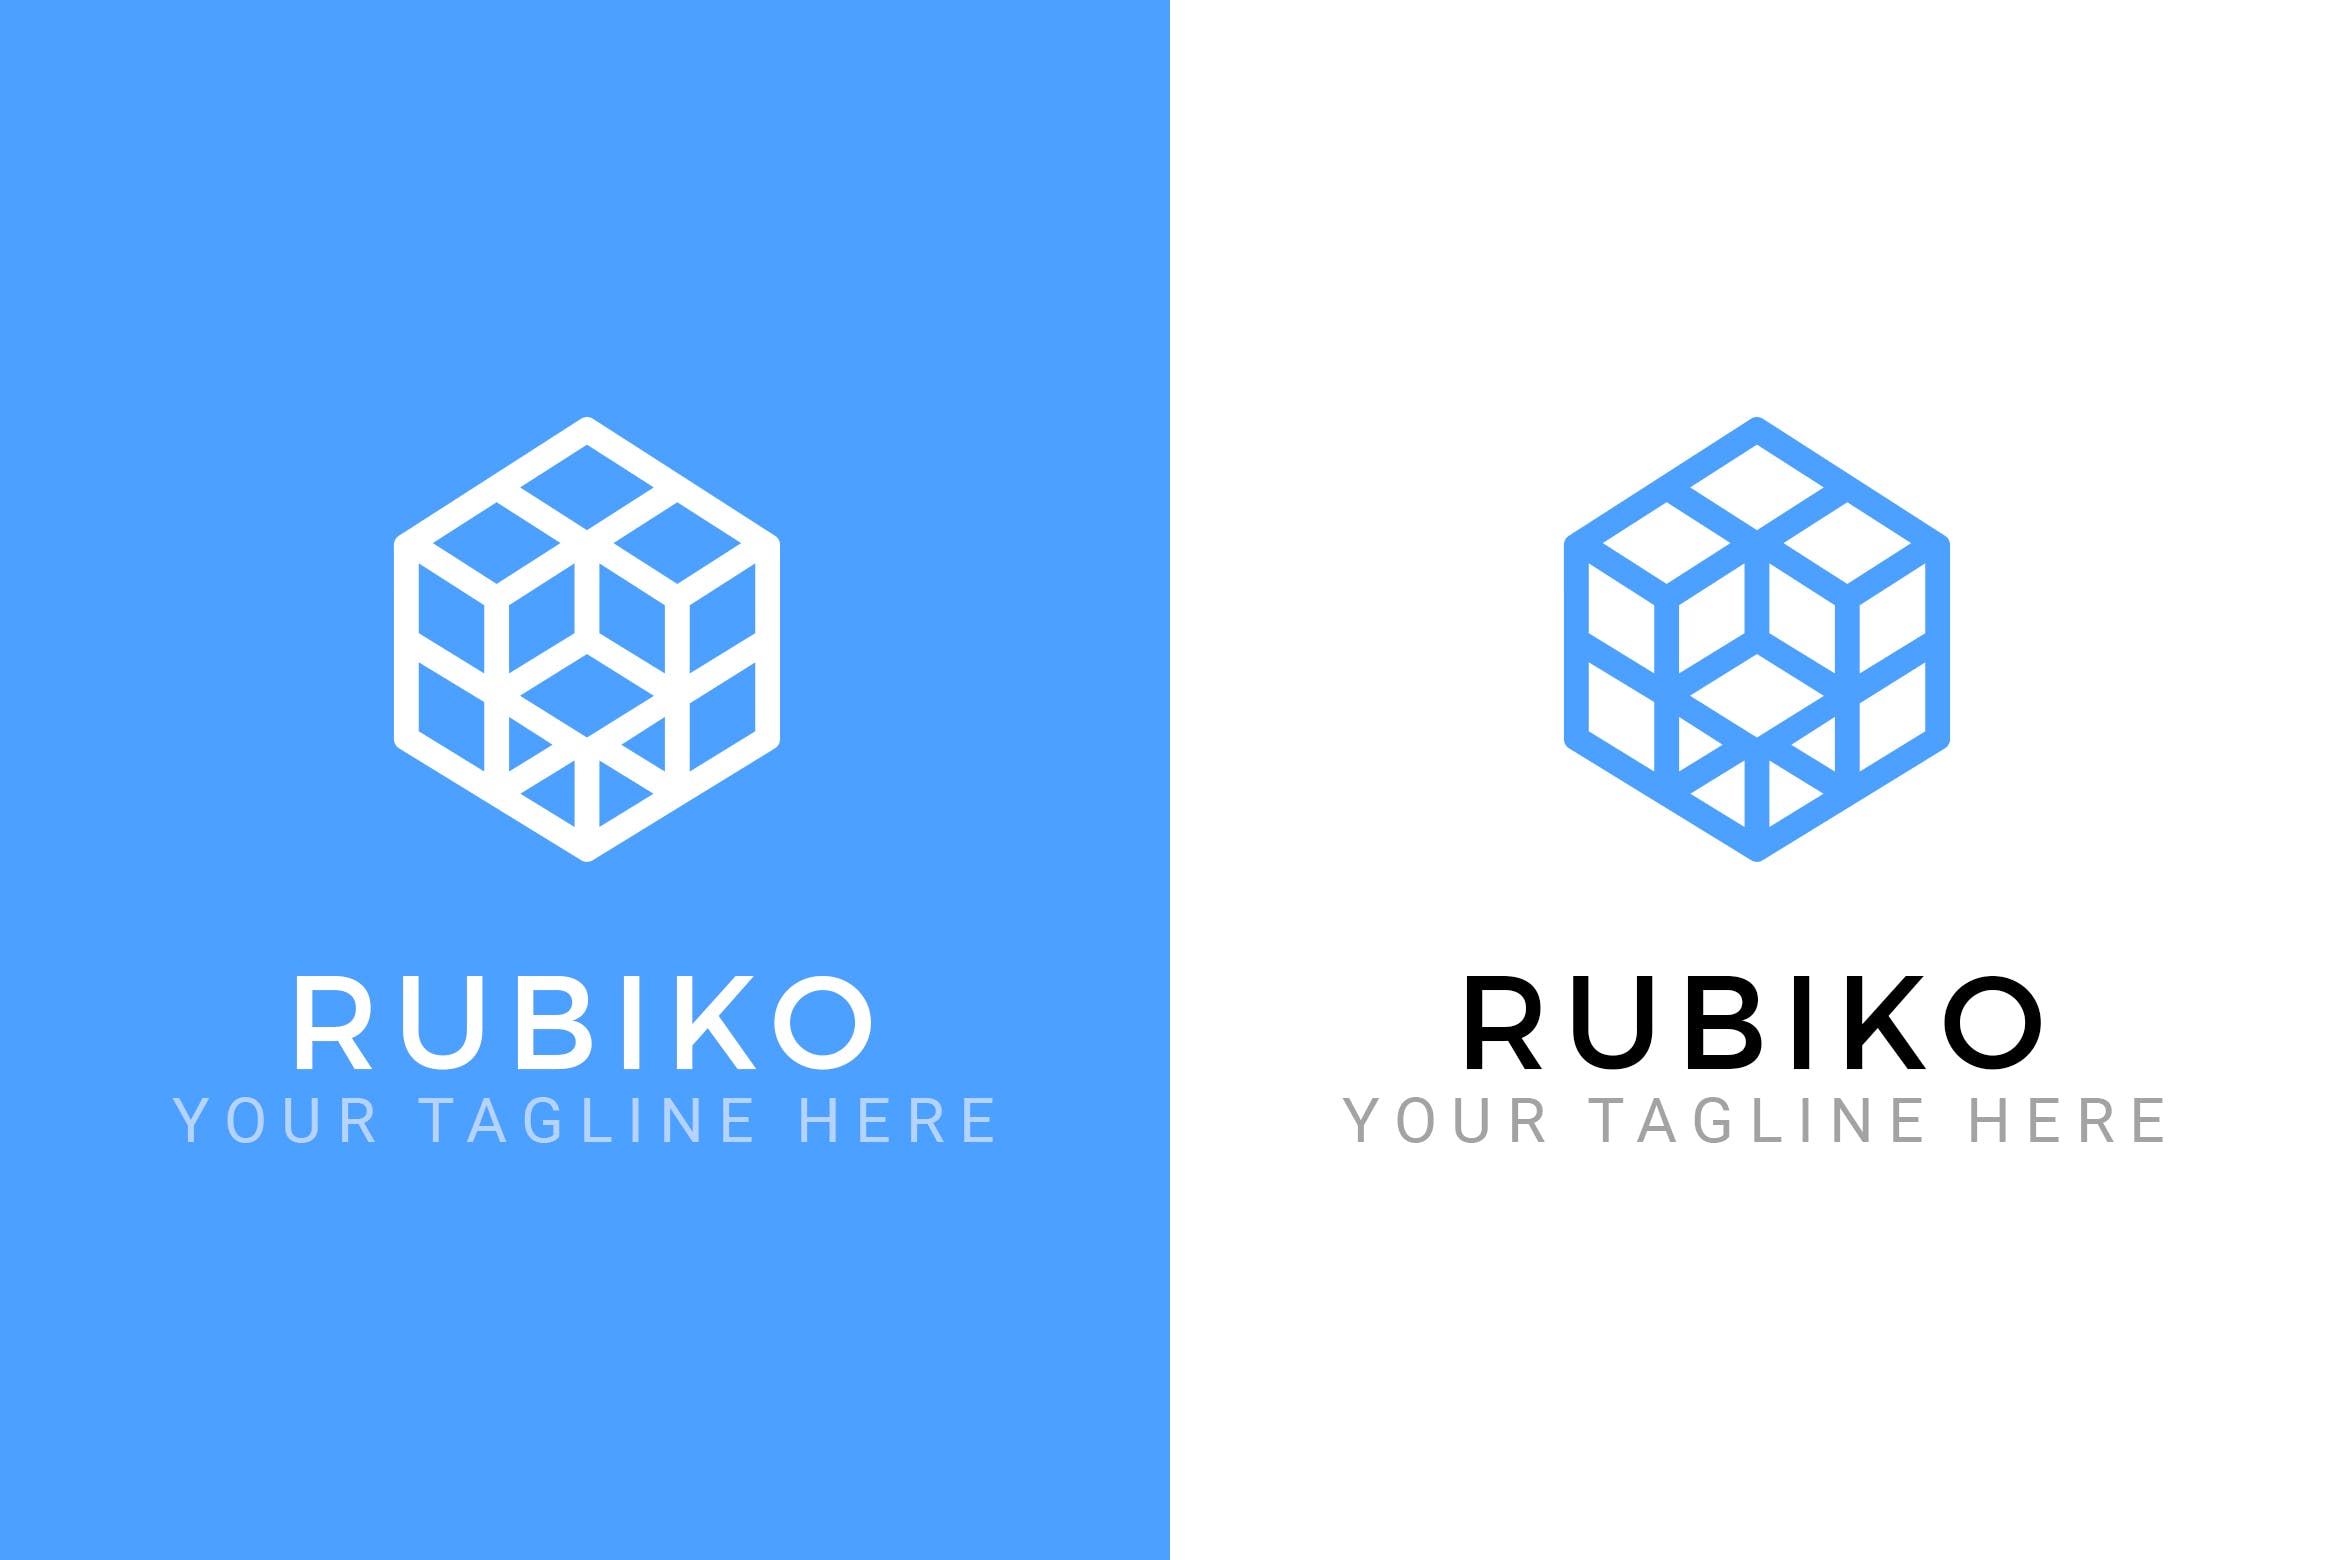 抽象魔方立体图形Logo设计素材库精选模板 Rubiko – Abstract Logo Template插图